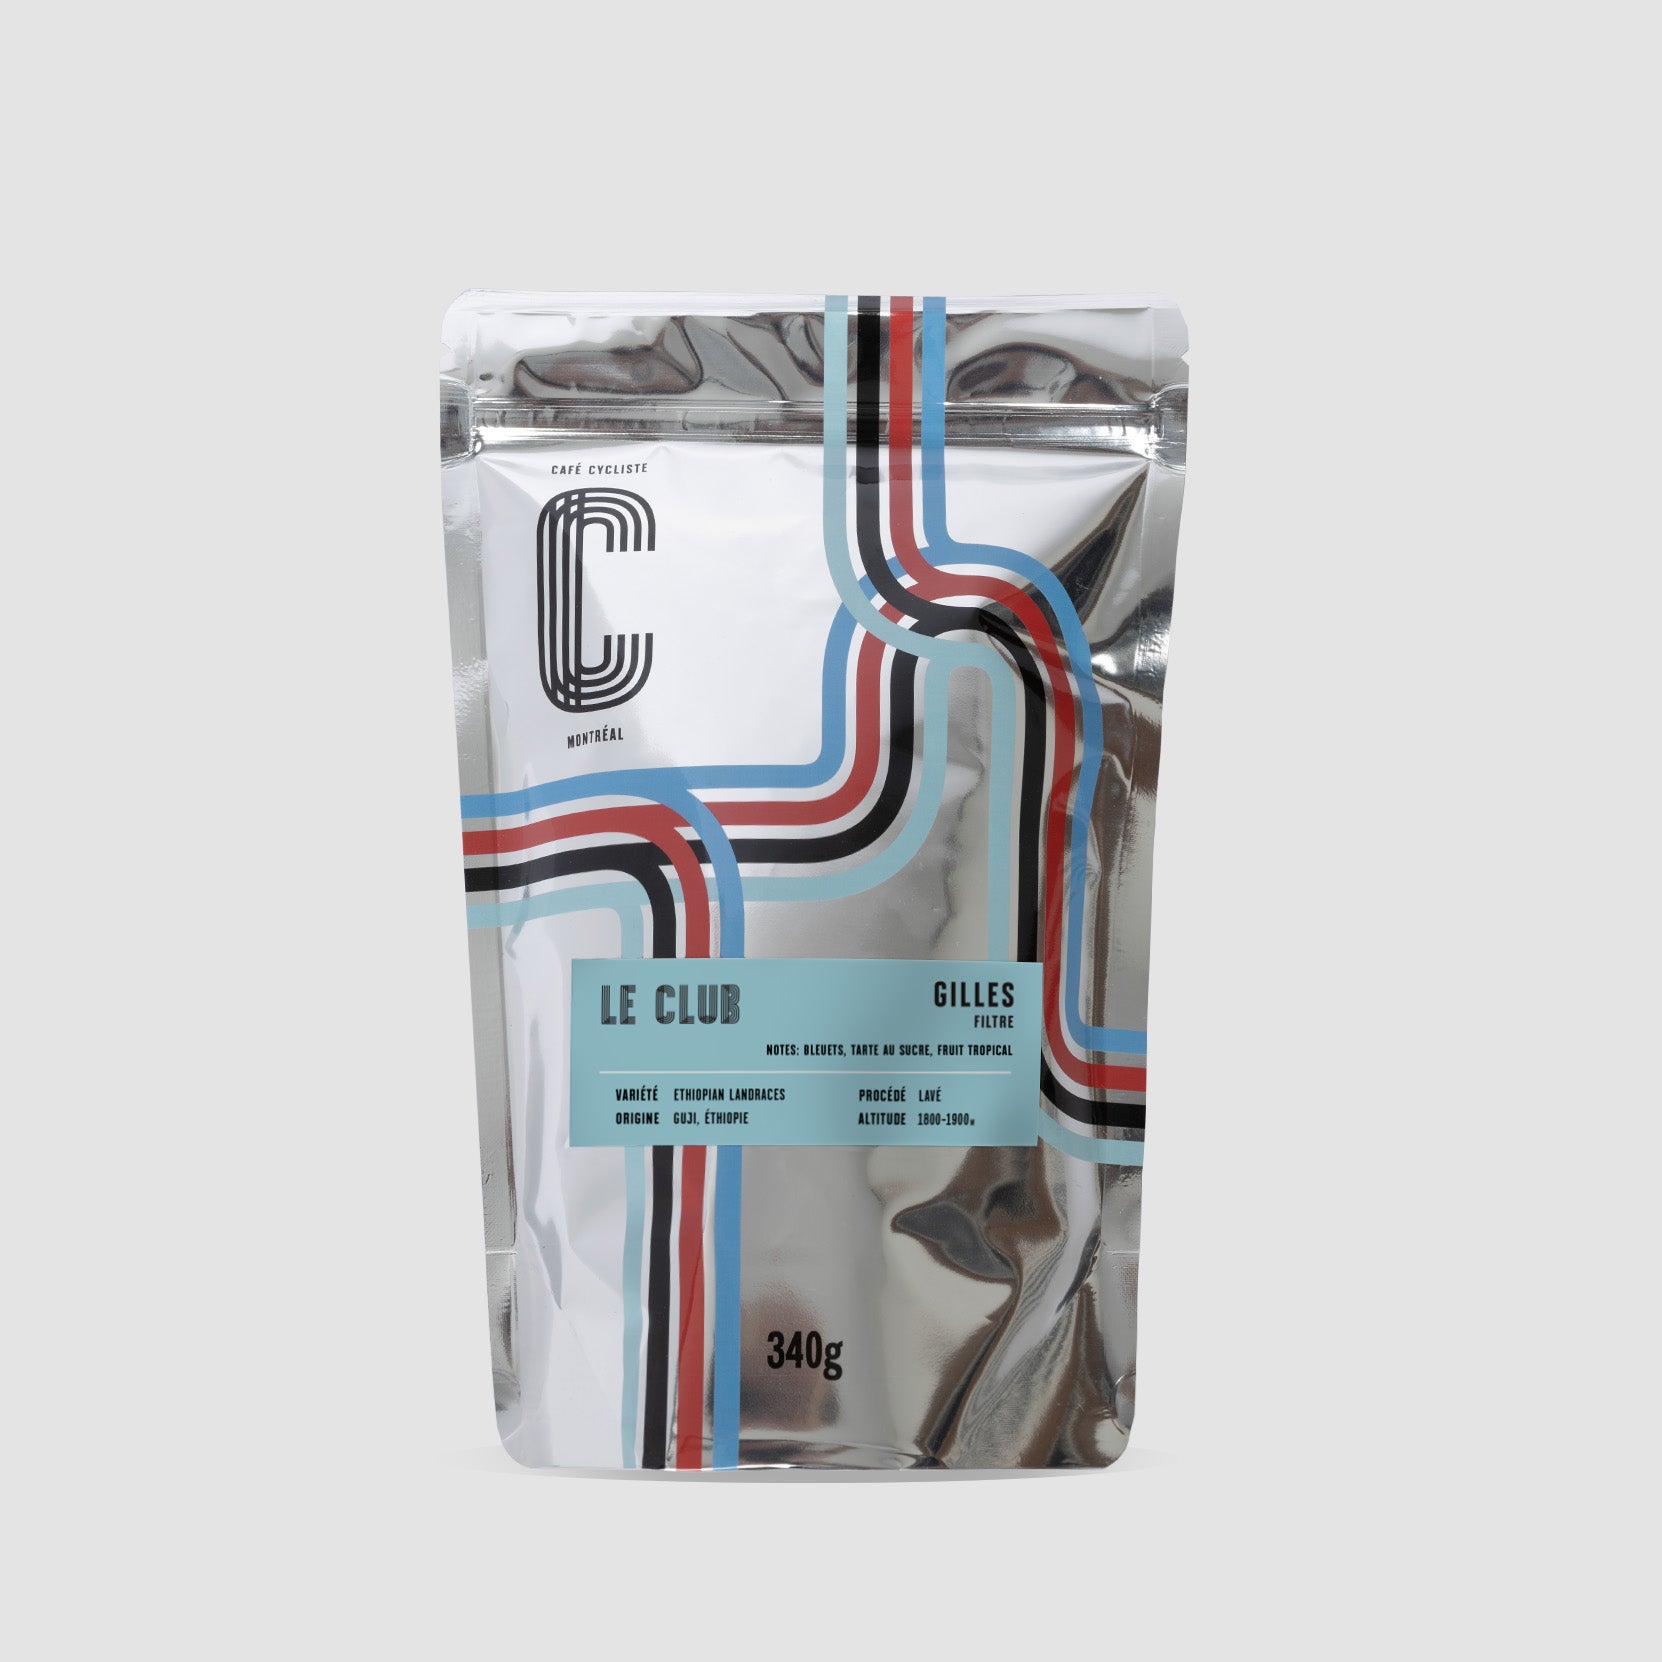 Gilles - 340g 咖啡袋